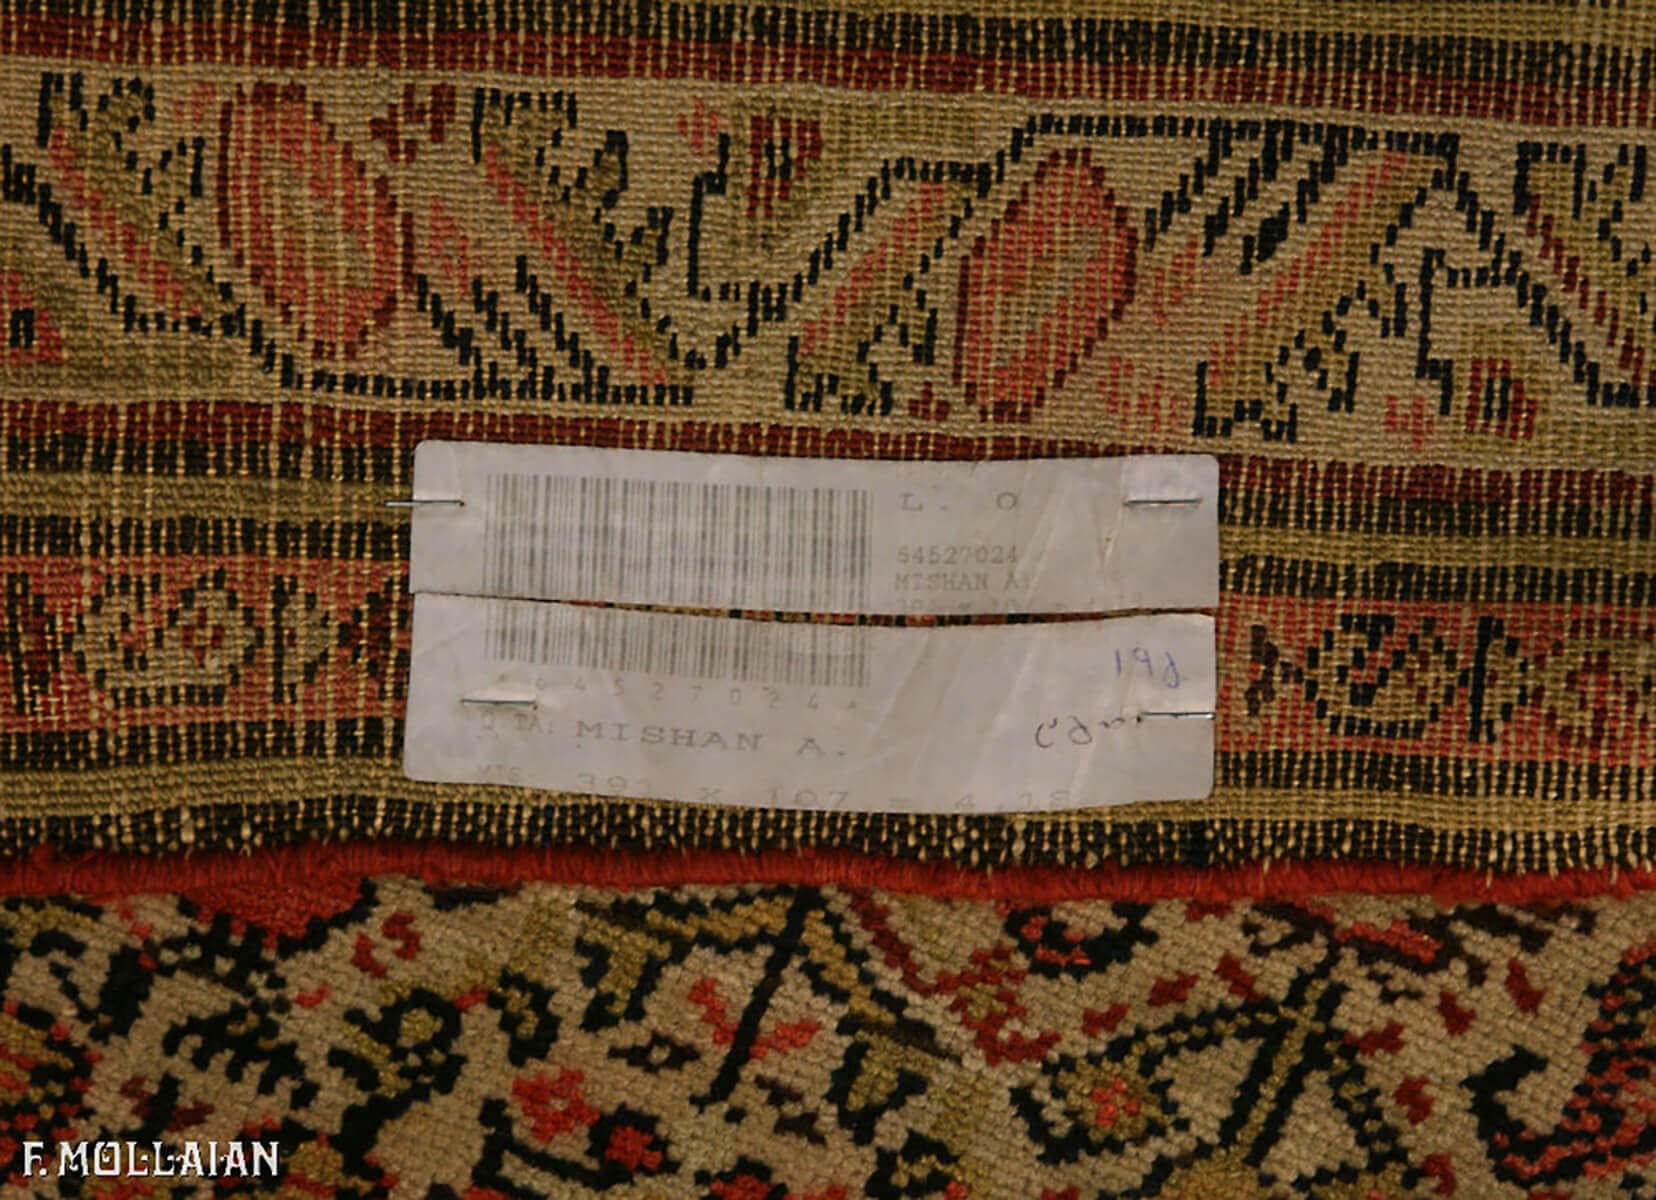 Antique Persian Mishan Runner n°:64527024